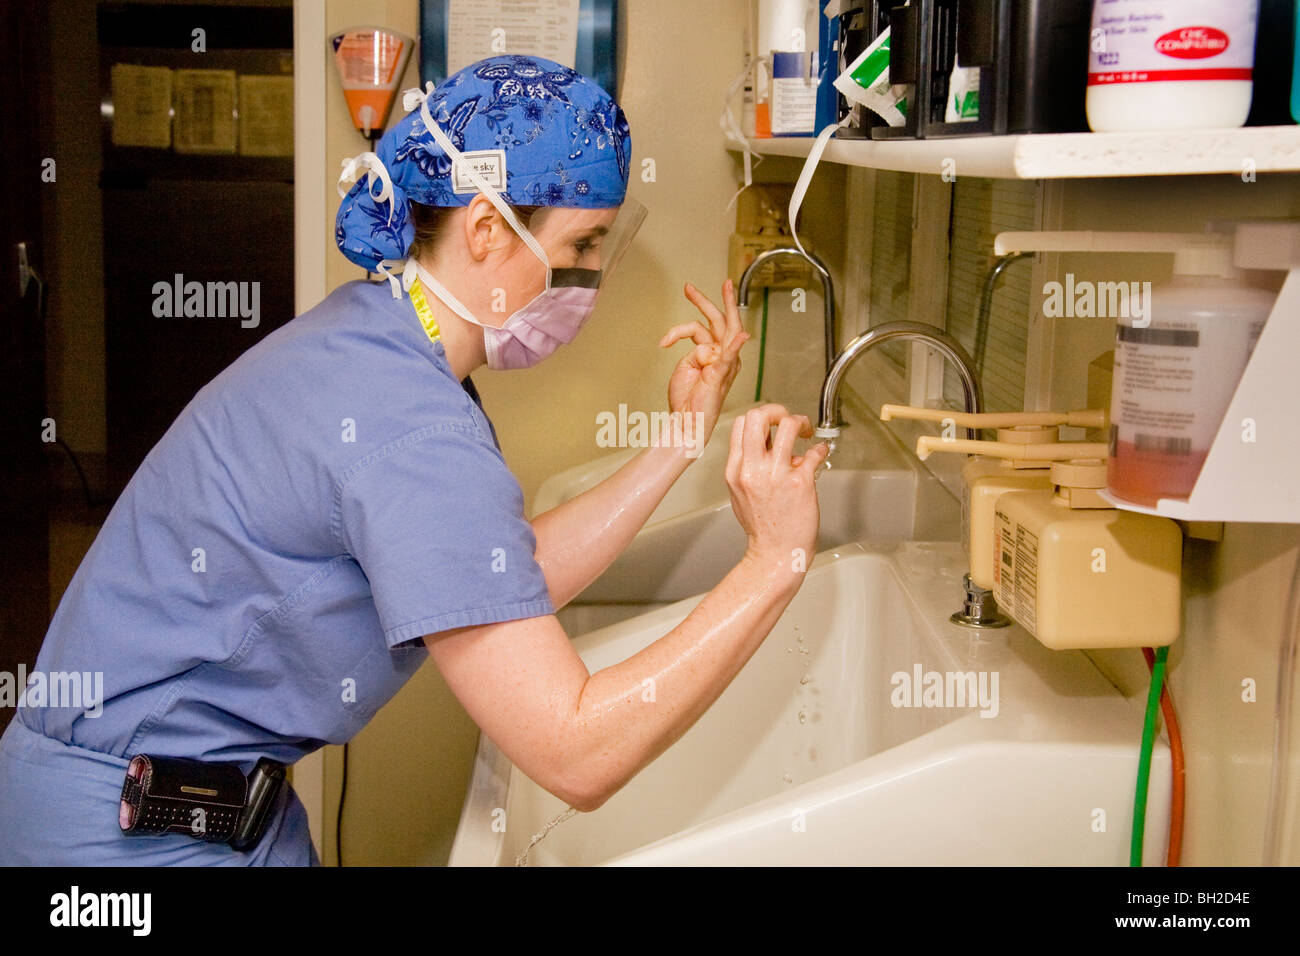 In "Scrubs" gekleidet und tragen einen Mundschutz, wäscht Chirurges Frau ihre Hände gründlich vor dem Ausführen eines Vorgangs. Stockfoto